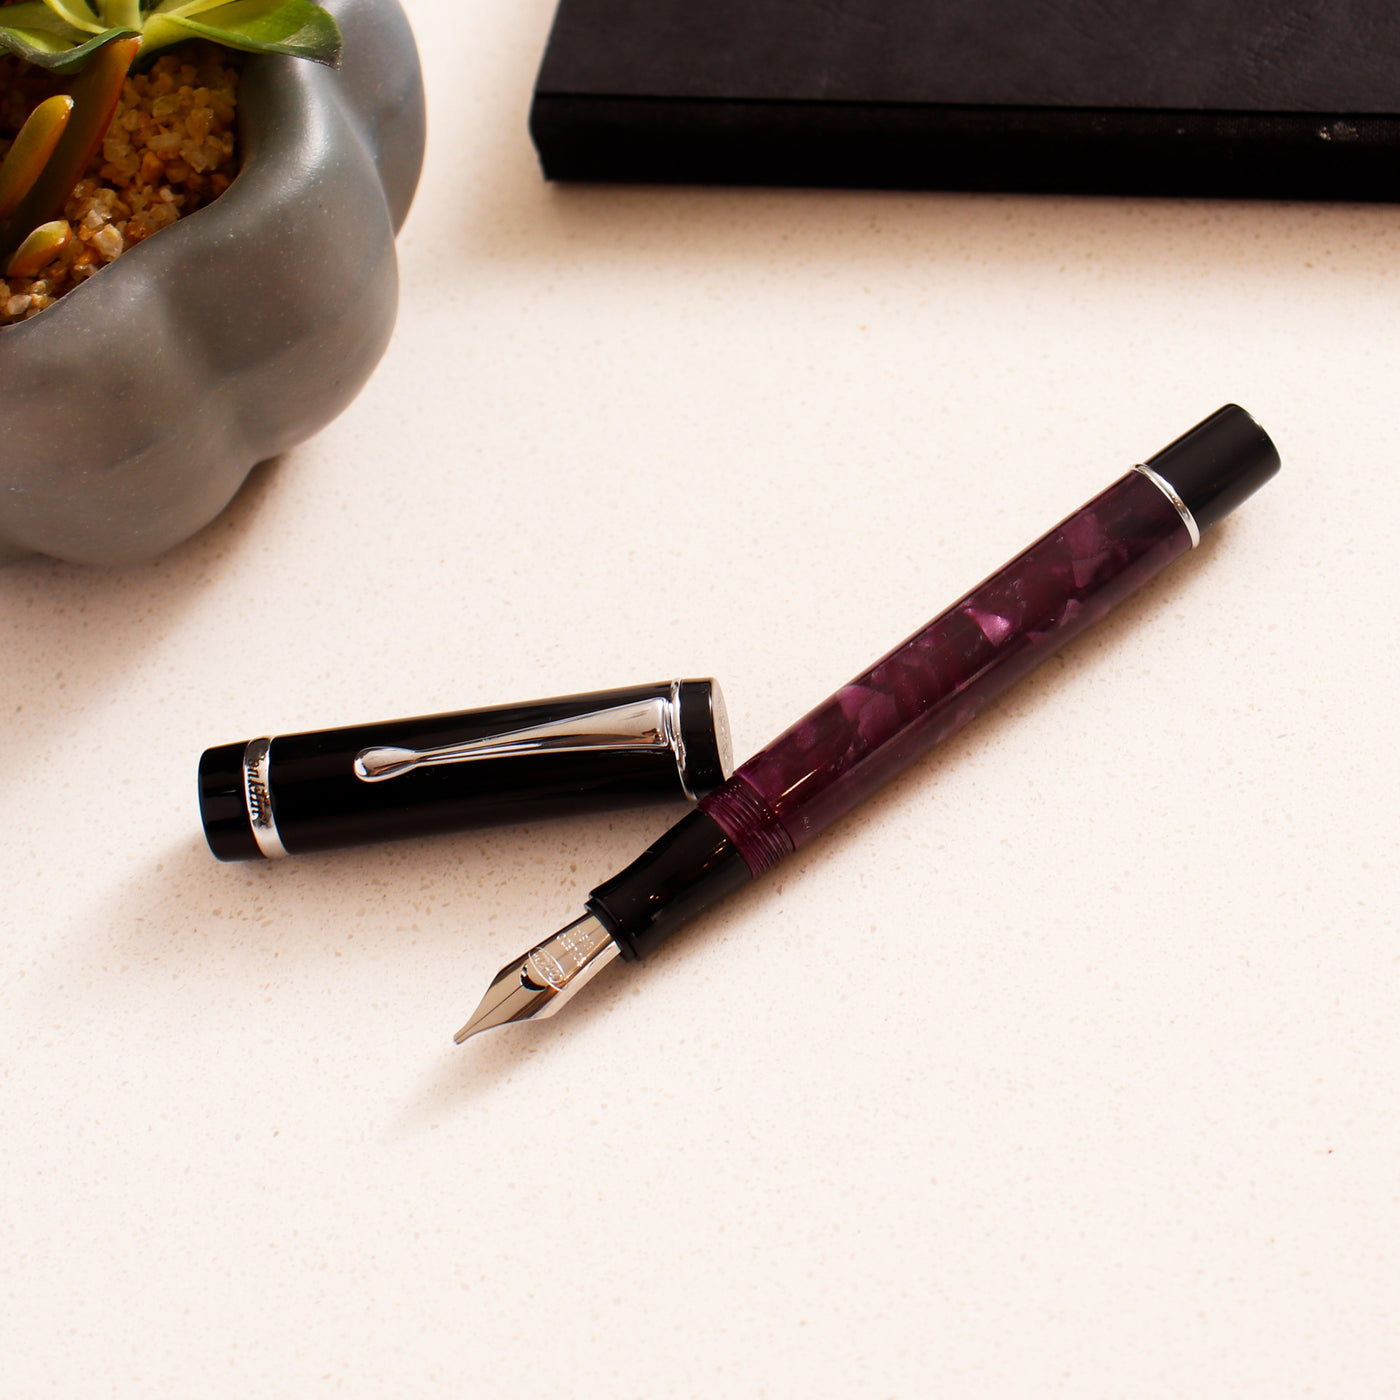 Conklin Duragraph Purple Nights Fountain Pen